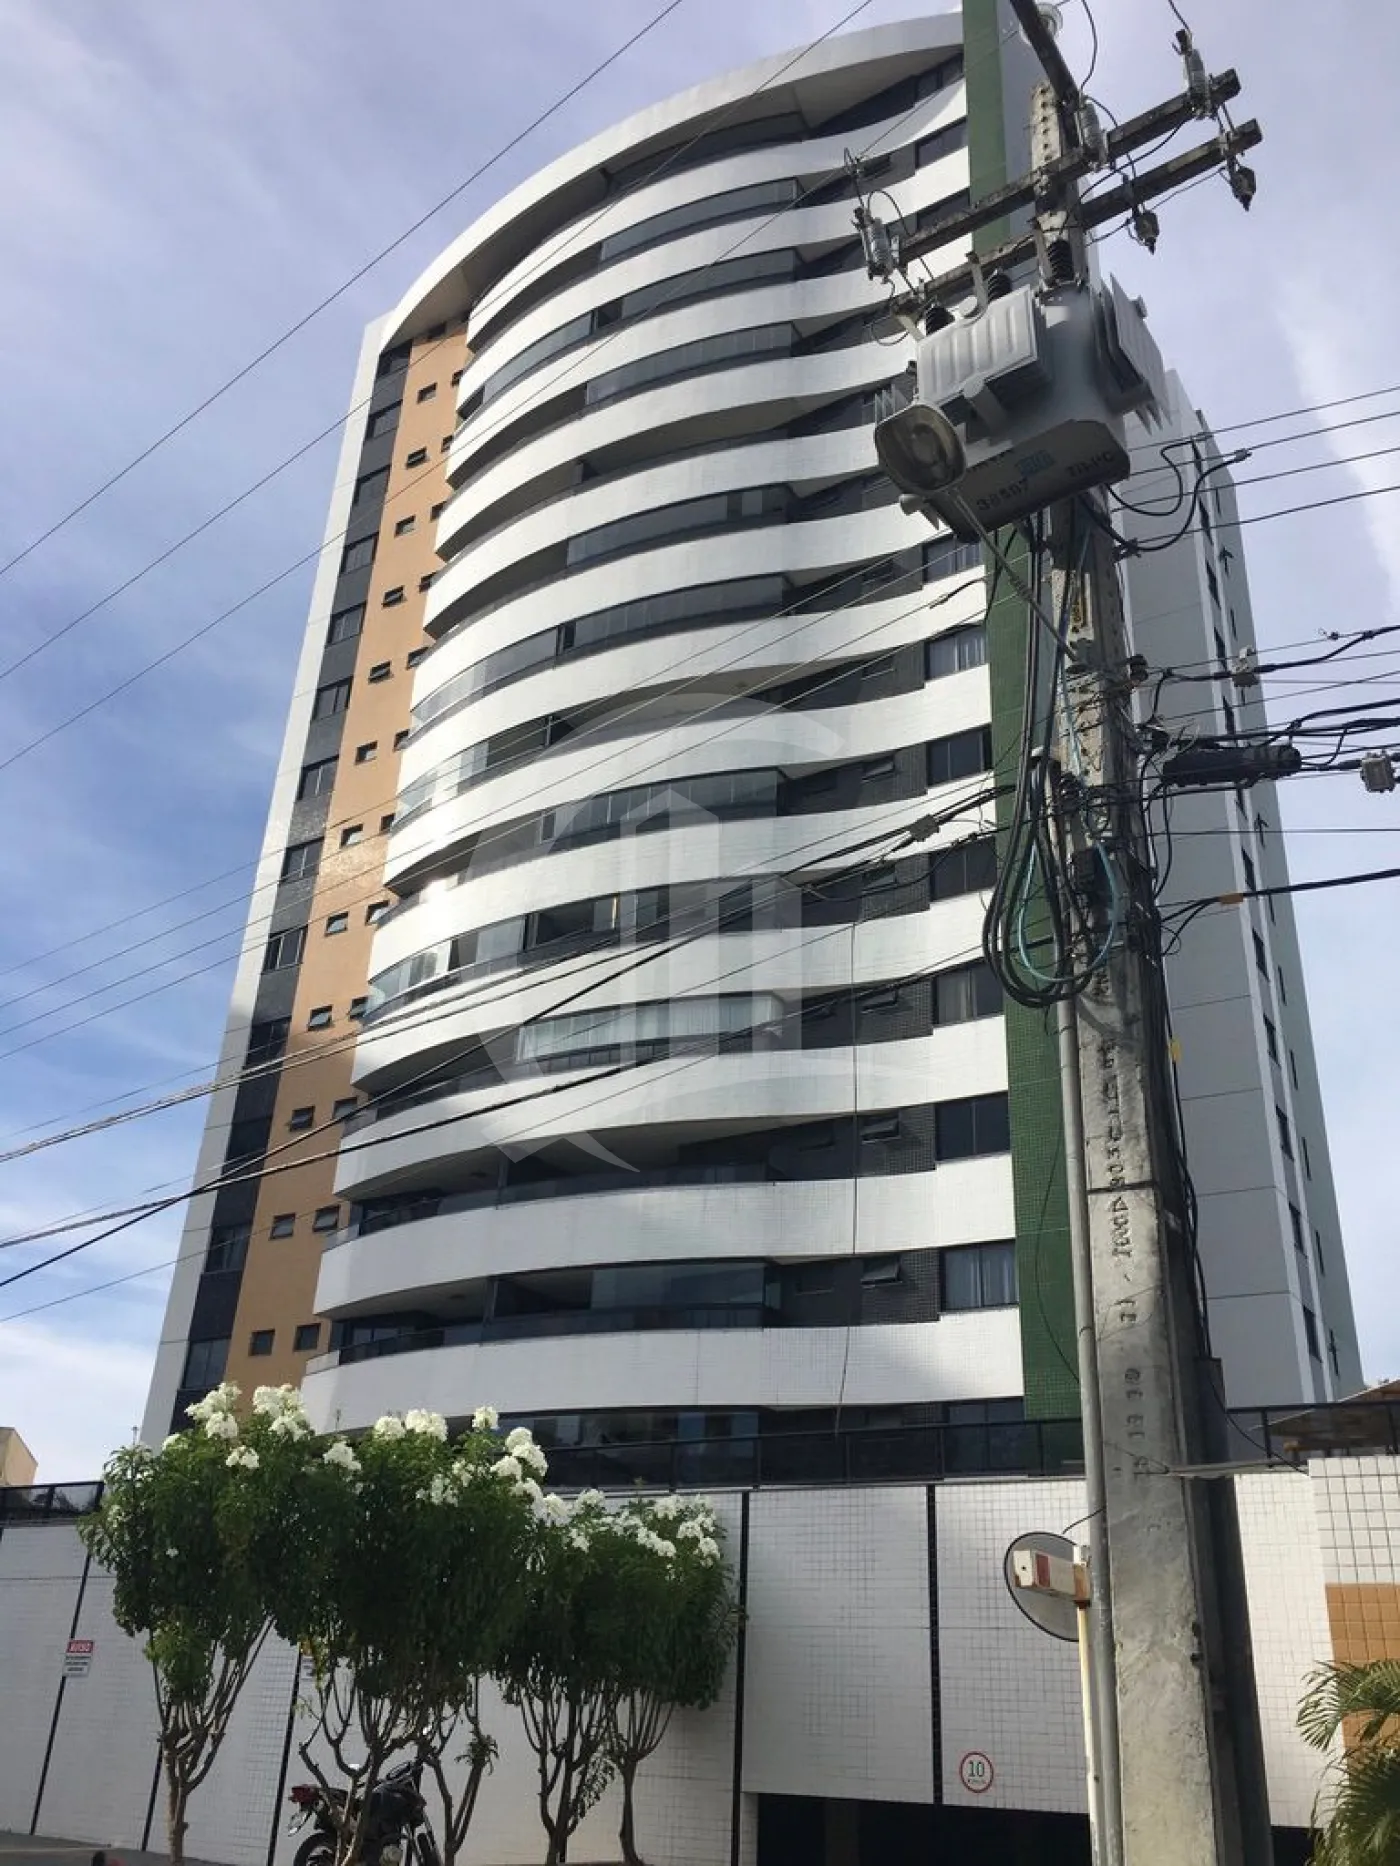 Comprar Apartamento / Padrão em Aracaju R$ 650.000,00 - Foto 1